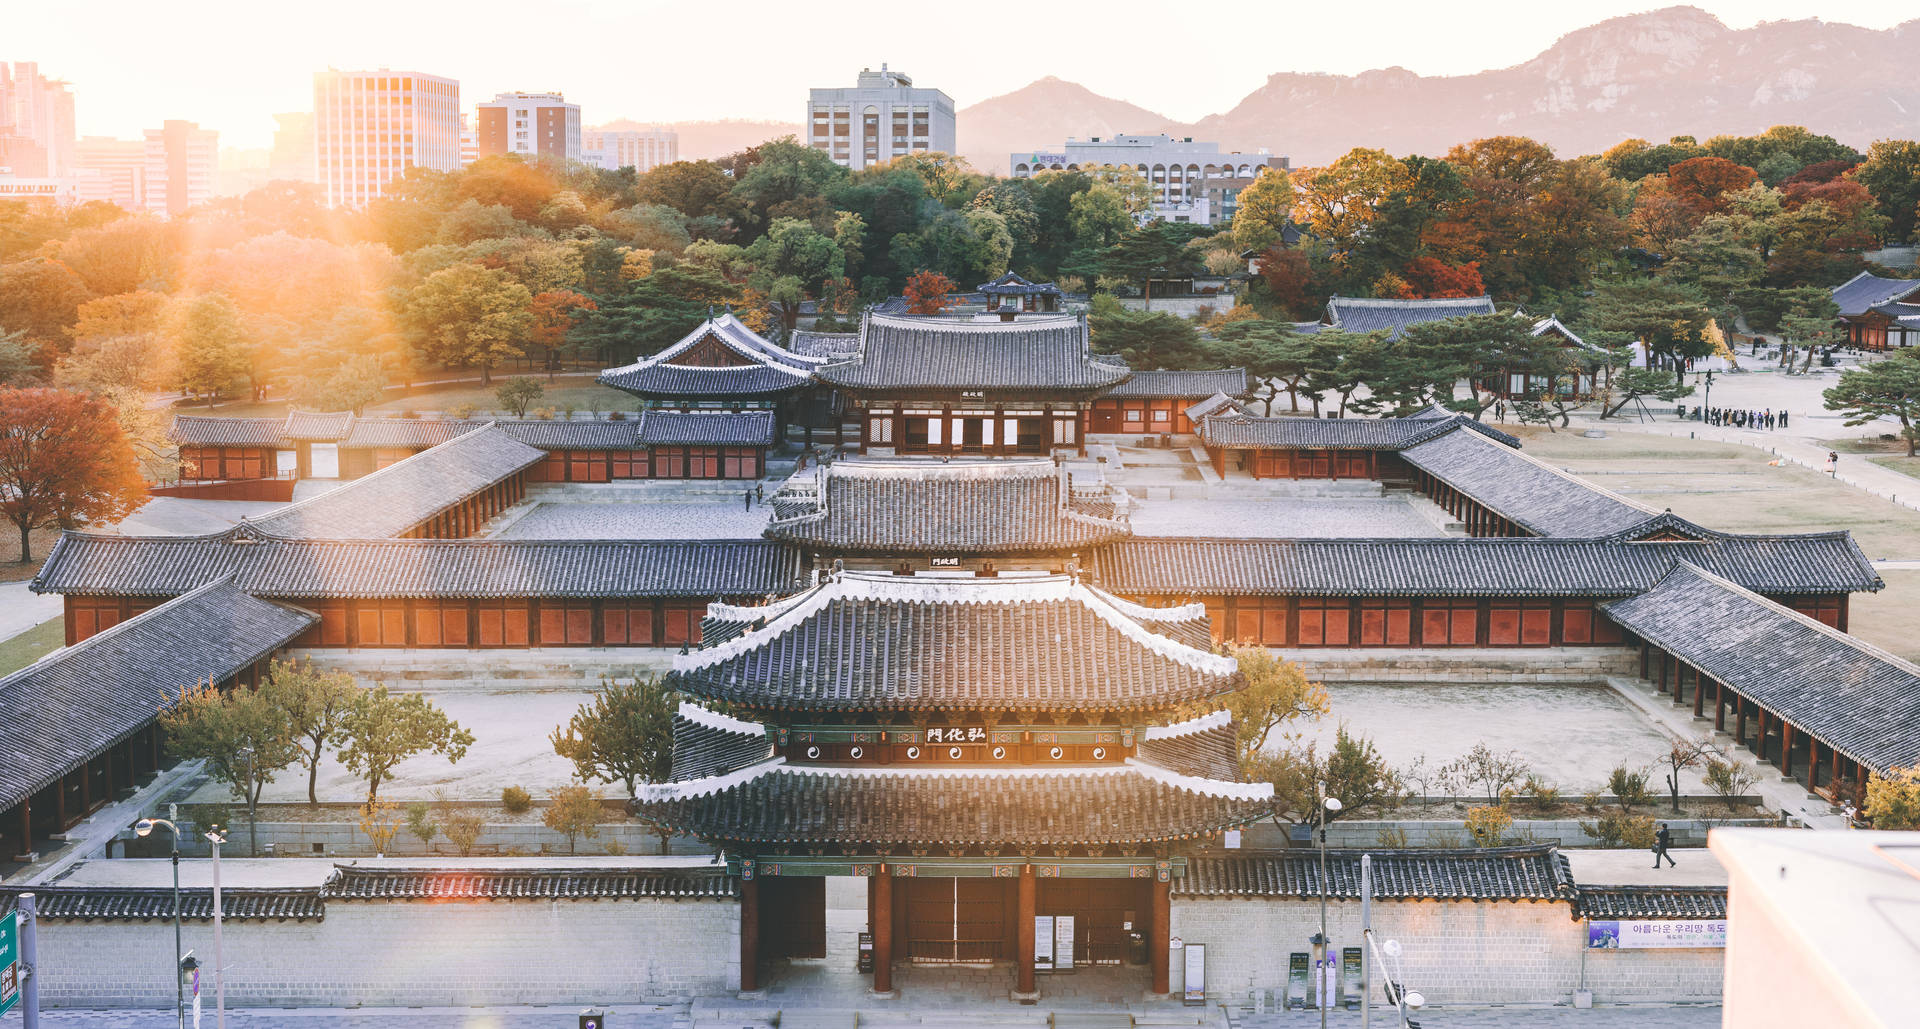 Seoul Changdeokgung Palace Sunrise Background